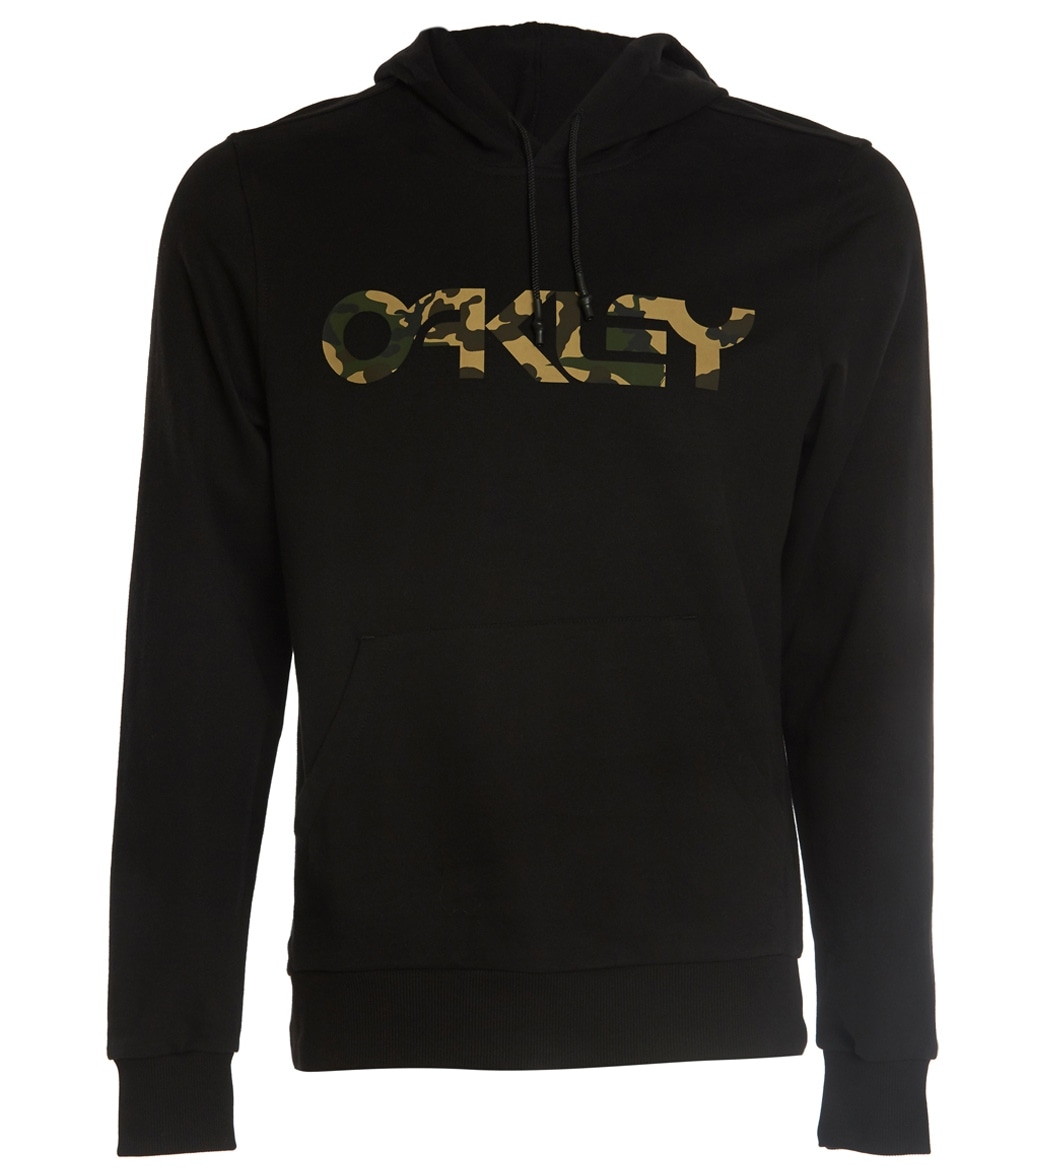 oakley waterproof hoodie